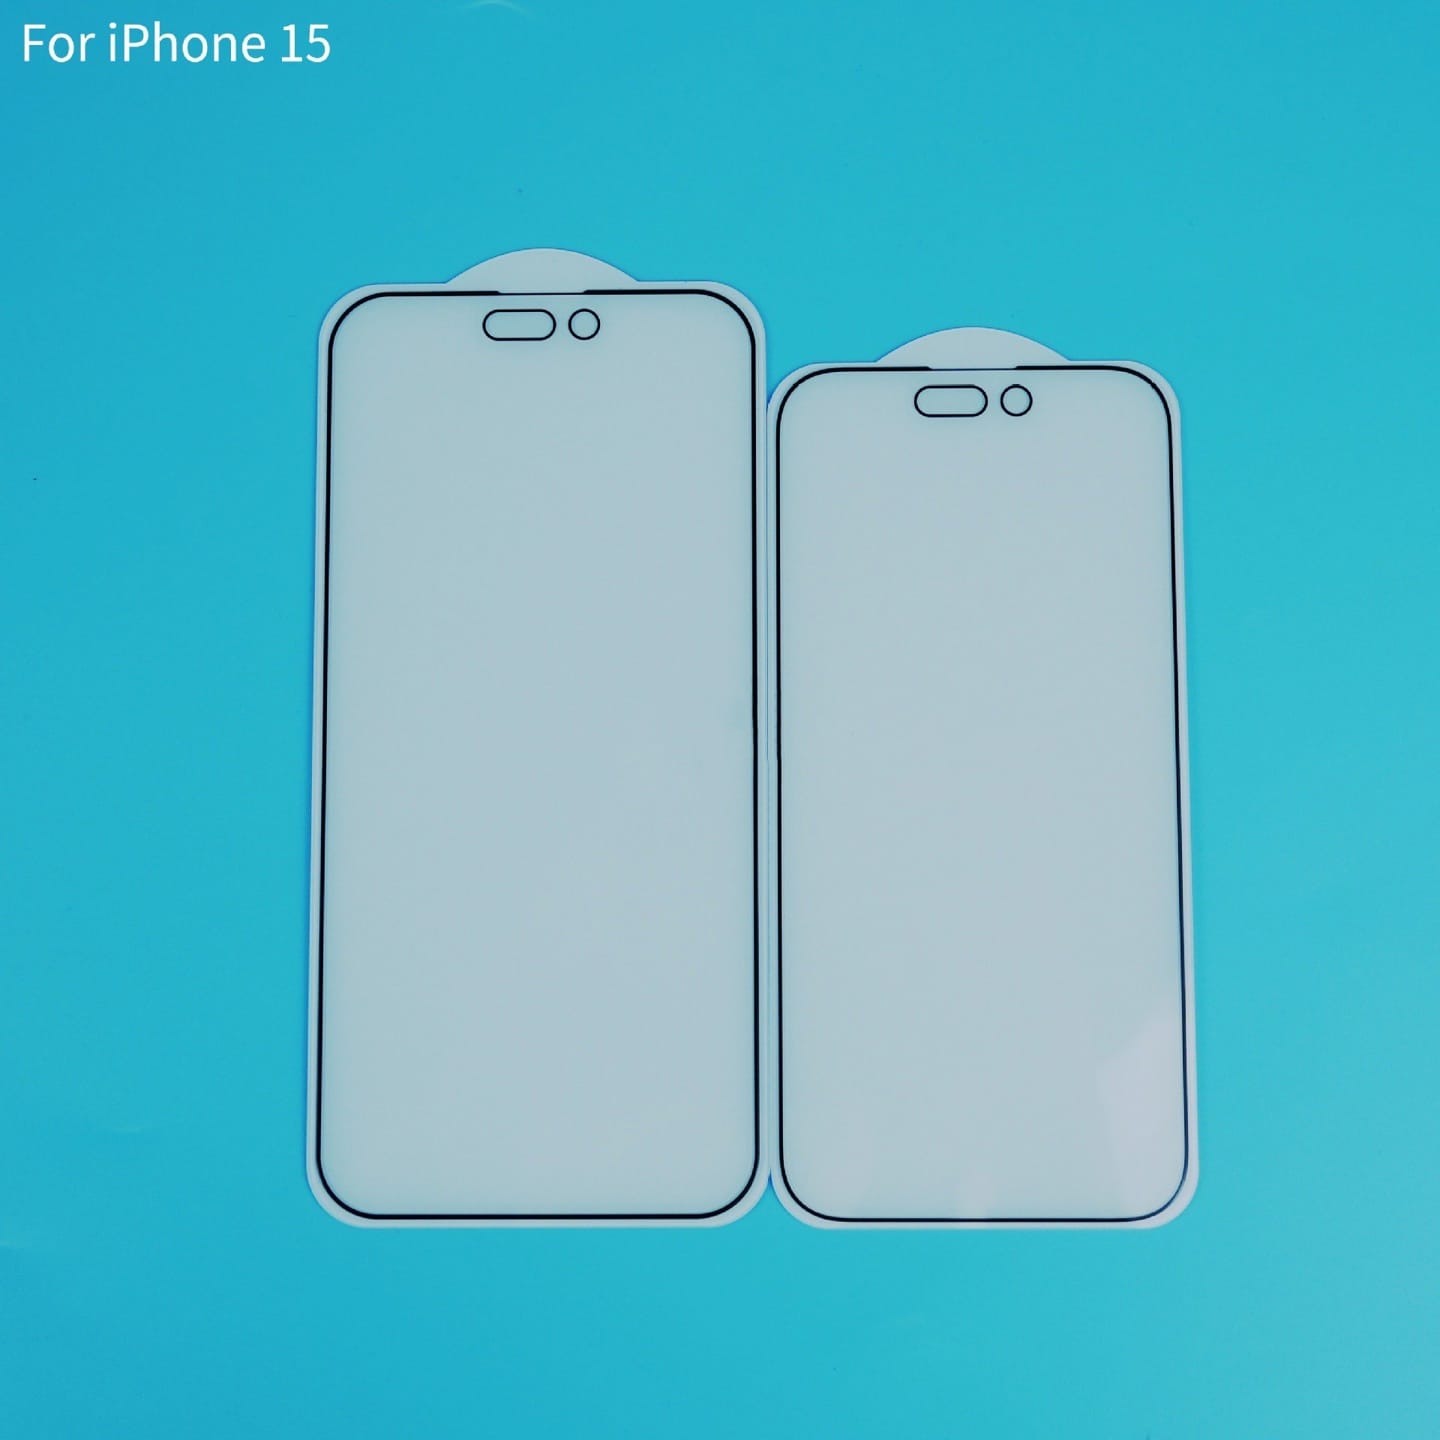 苹果 iPhone 15 系列钢化膜照片曝光